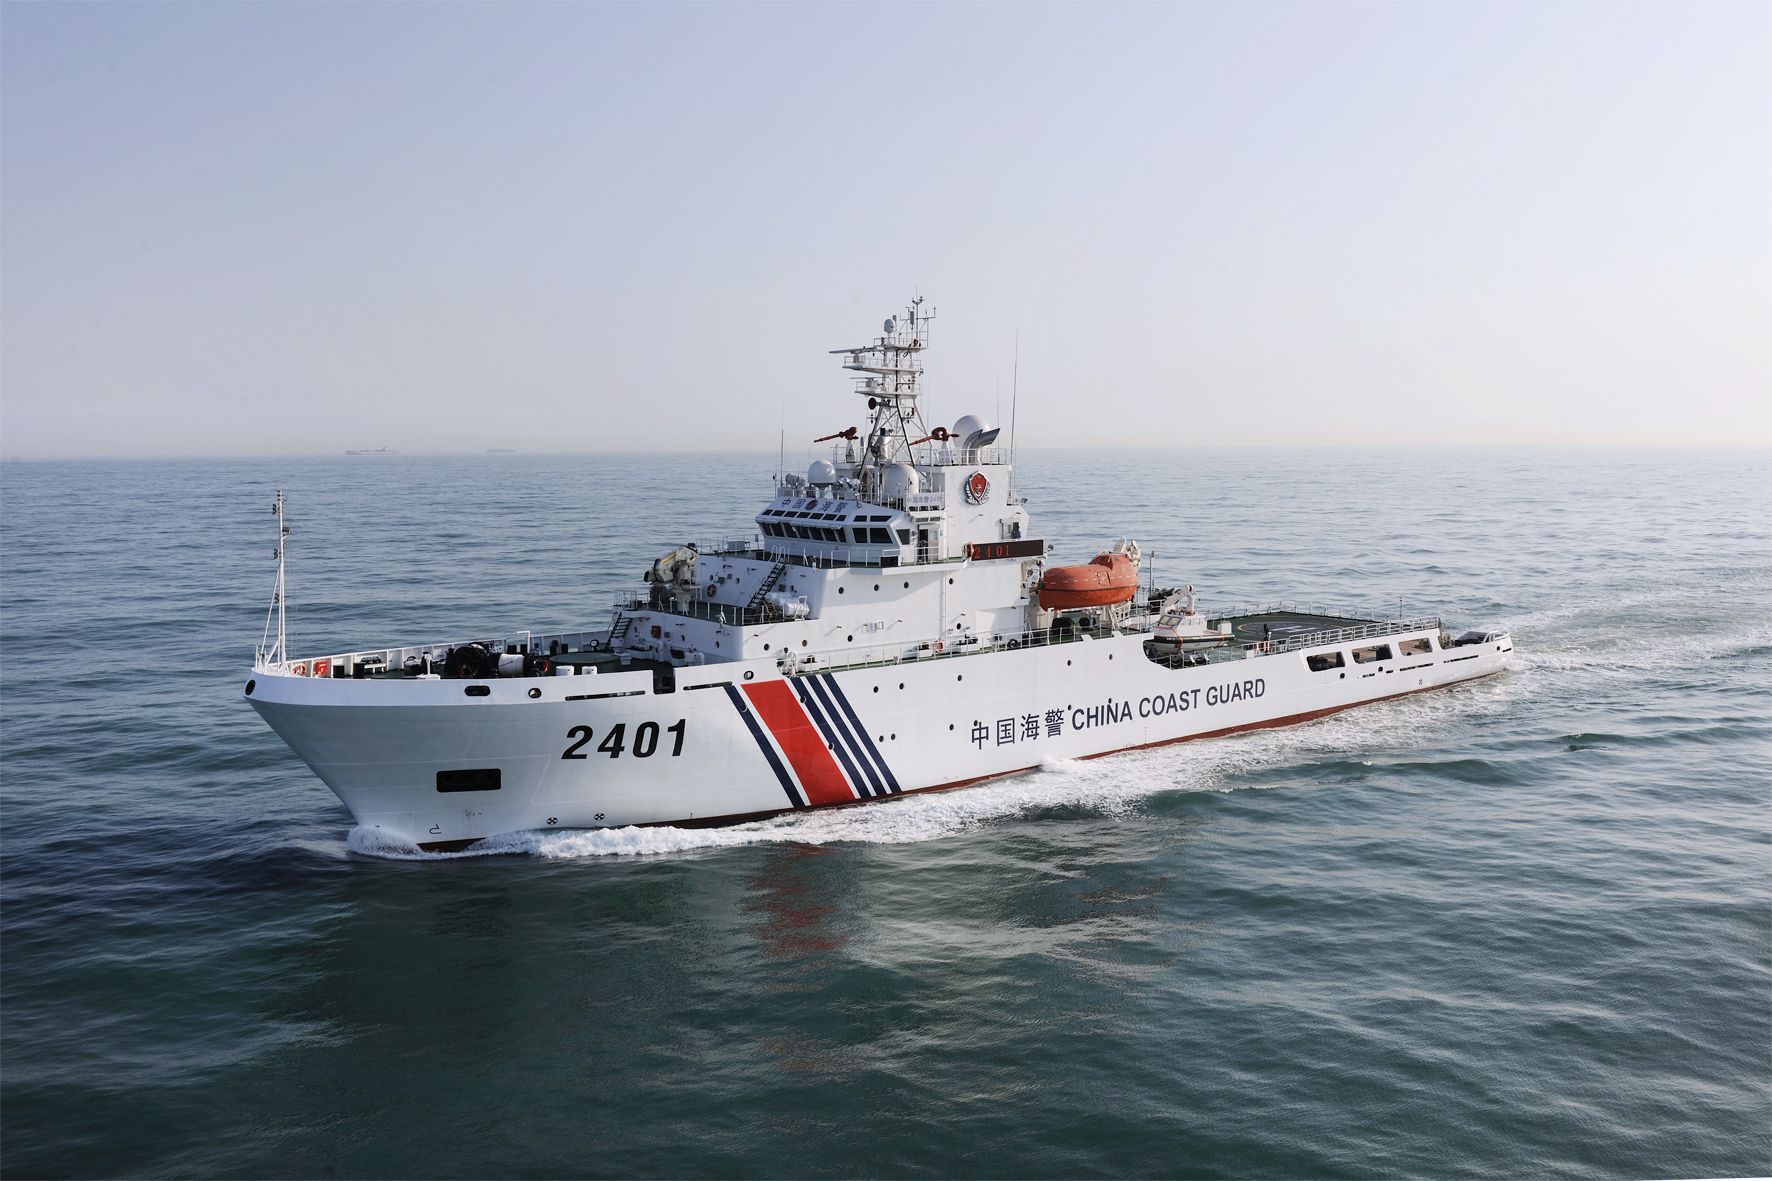 授权开火后, 中国万吨海警船入列, 对美释放强硬信号